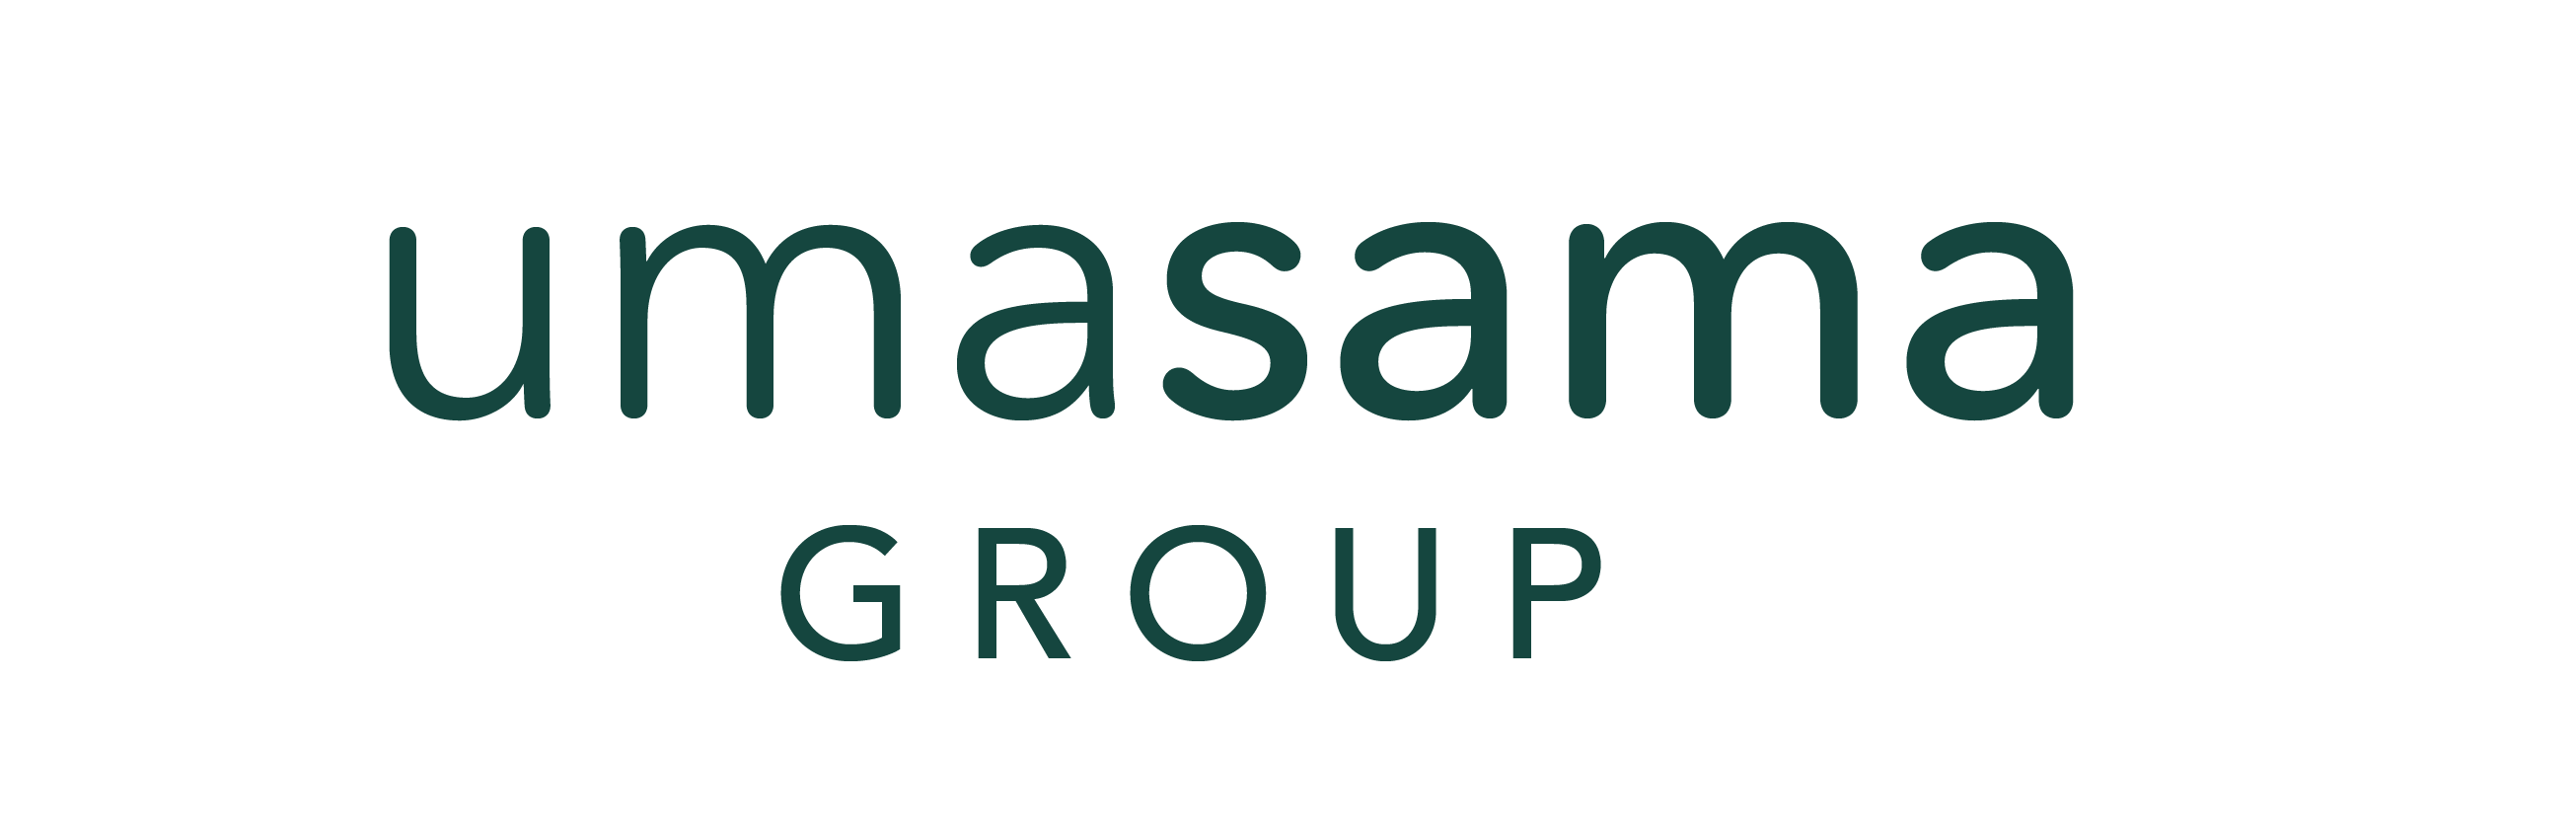 Umasama Group